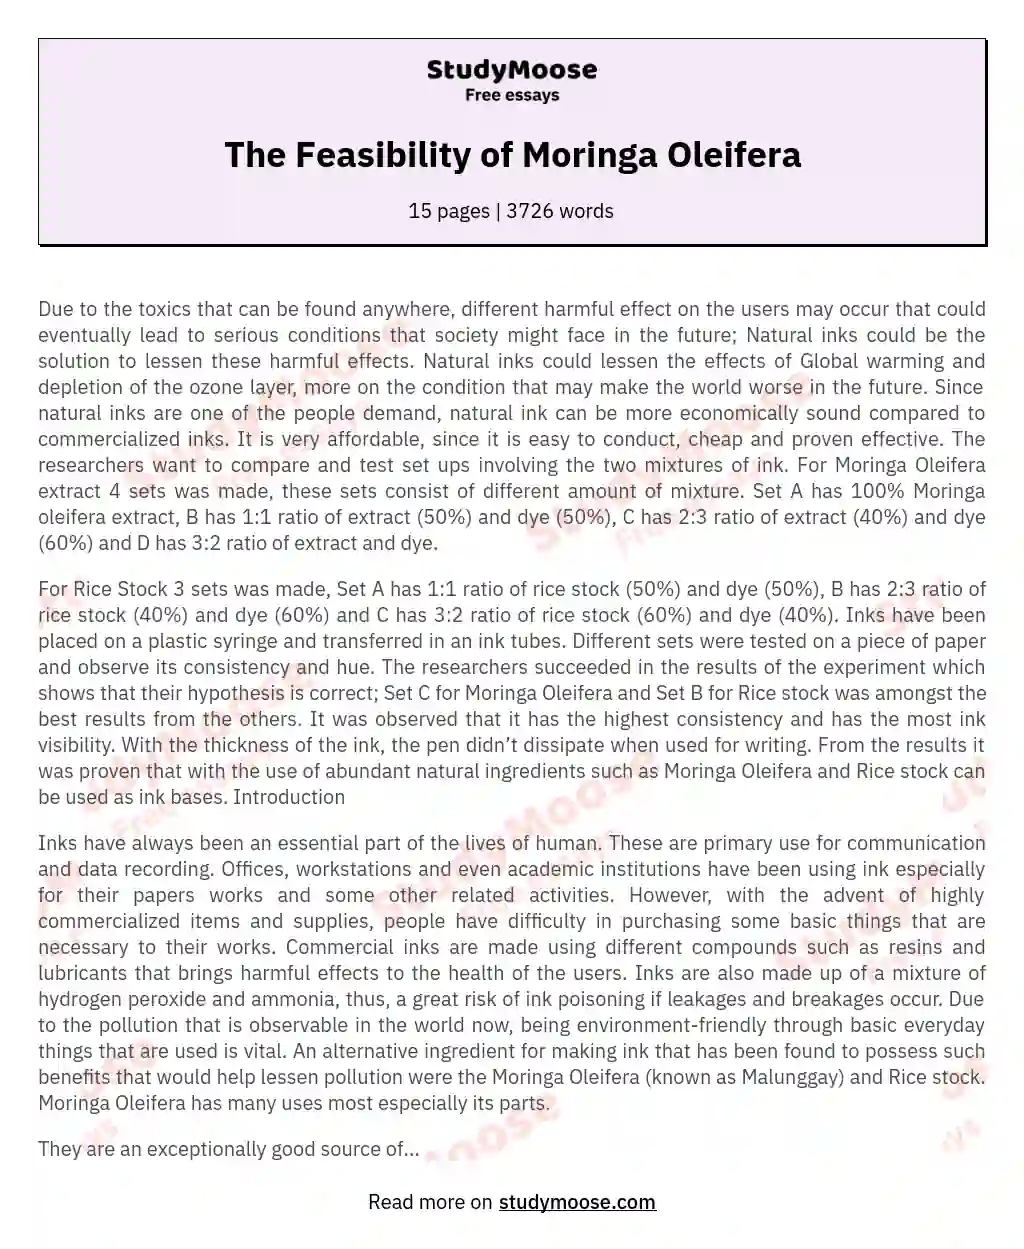 The Feasibility of Moringa Oleifera essay